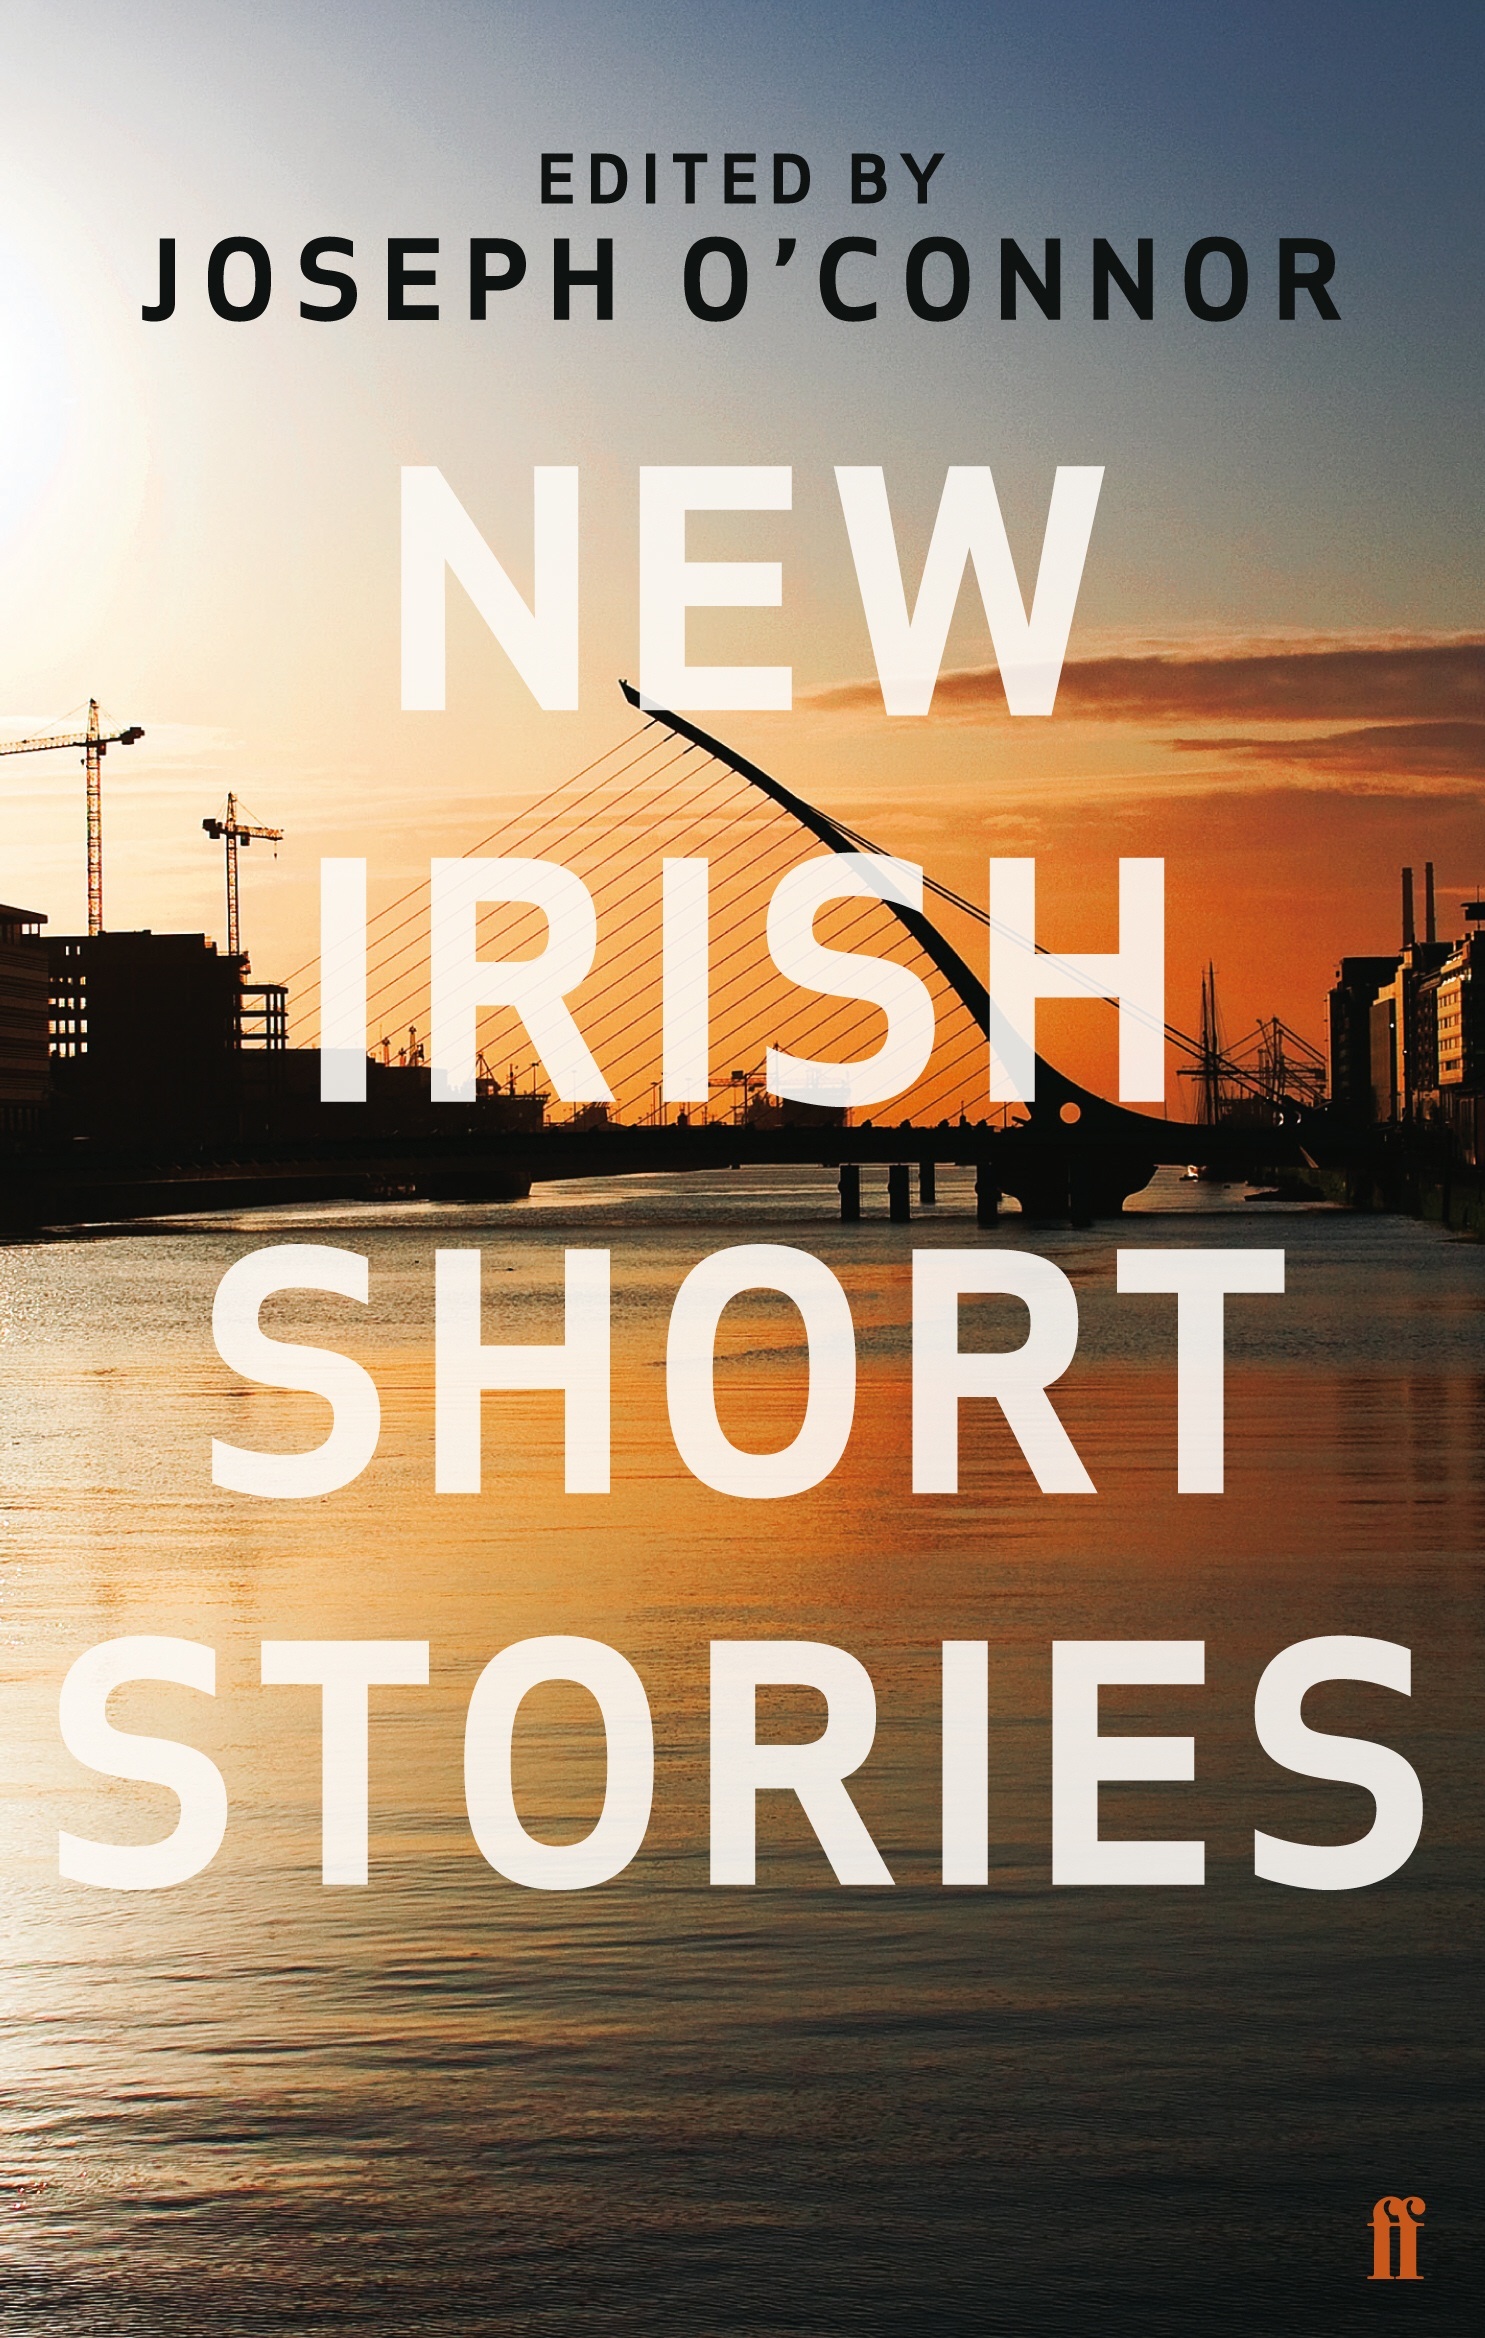 New Irish Short Stories